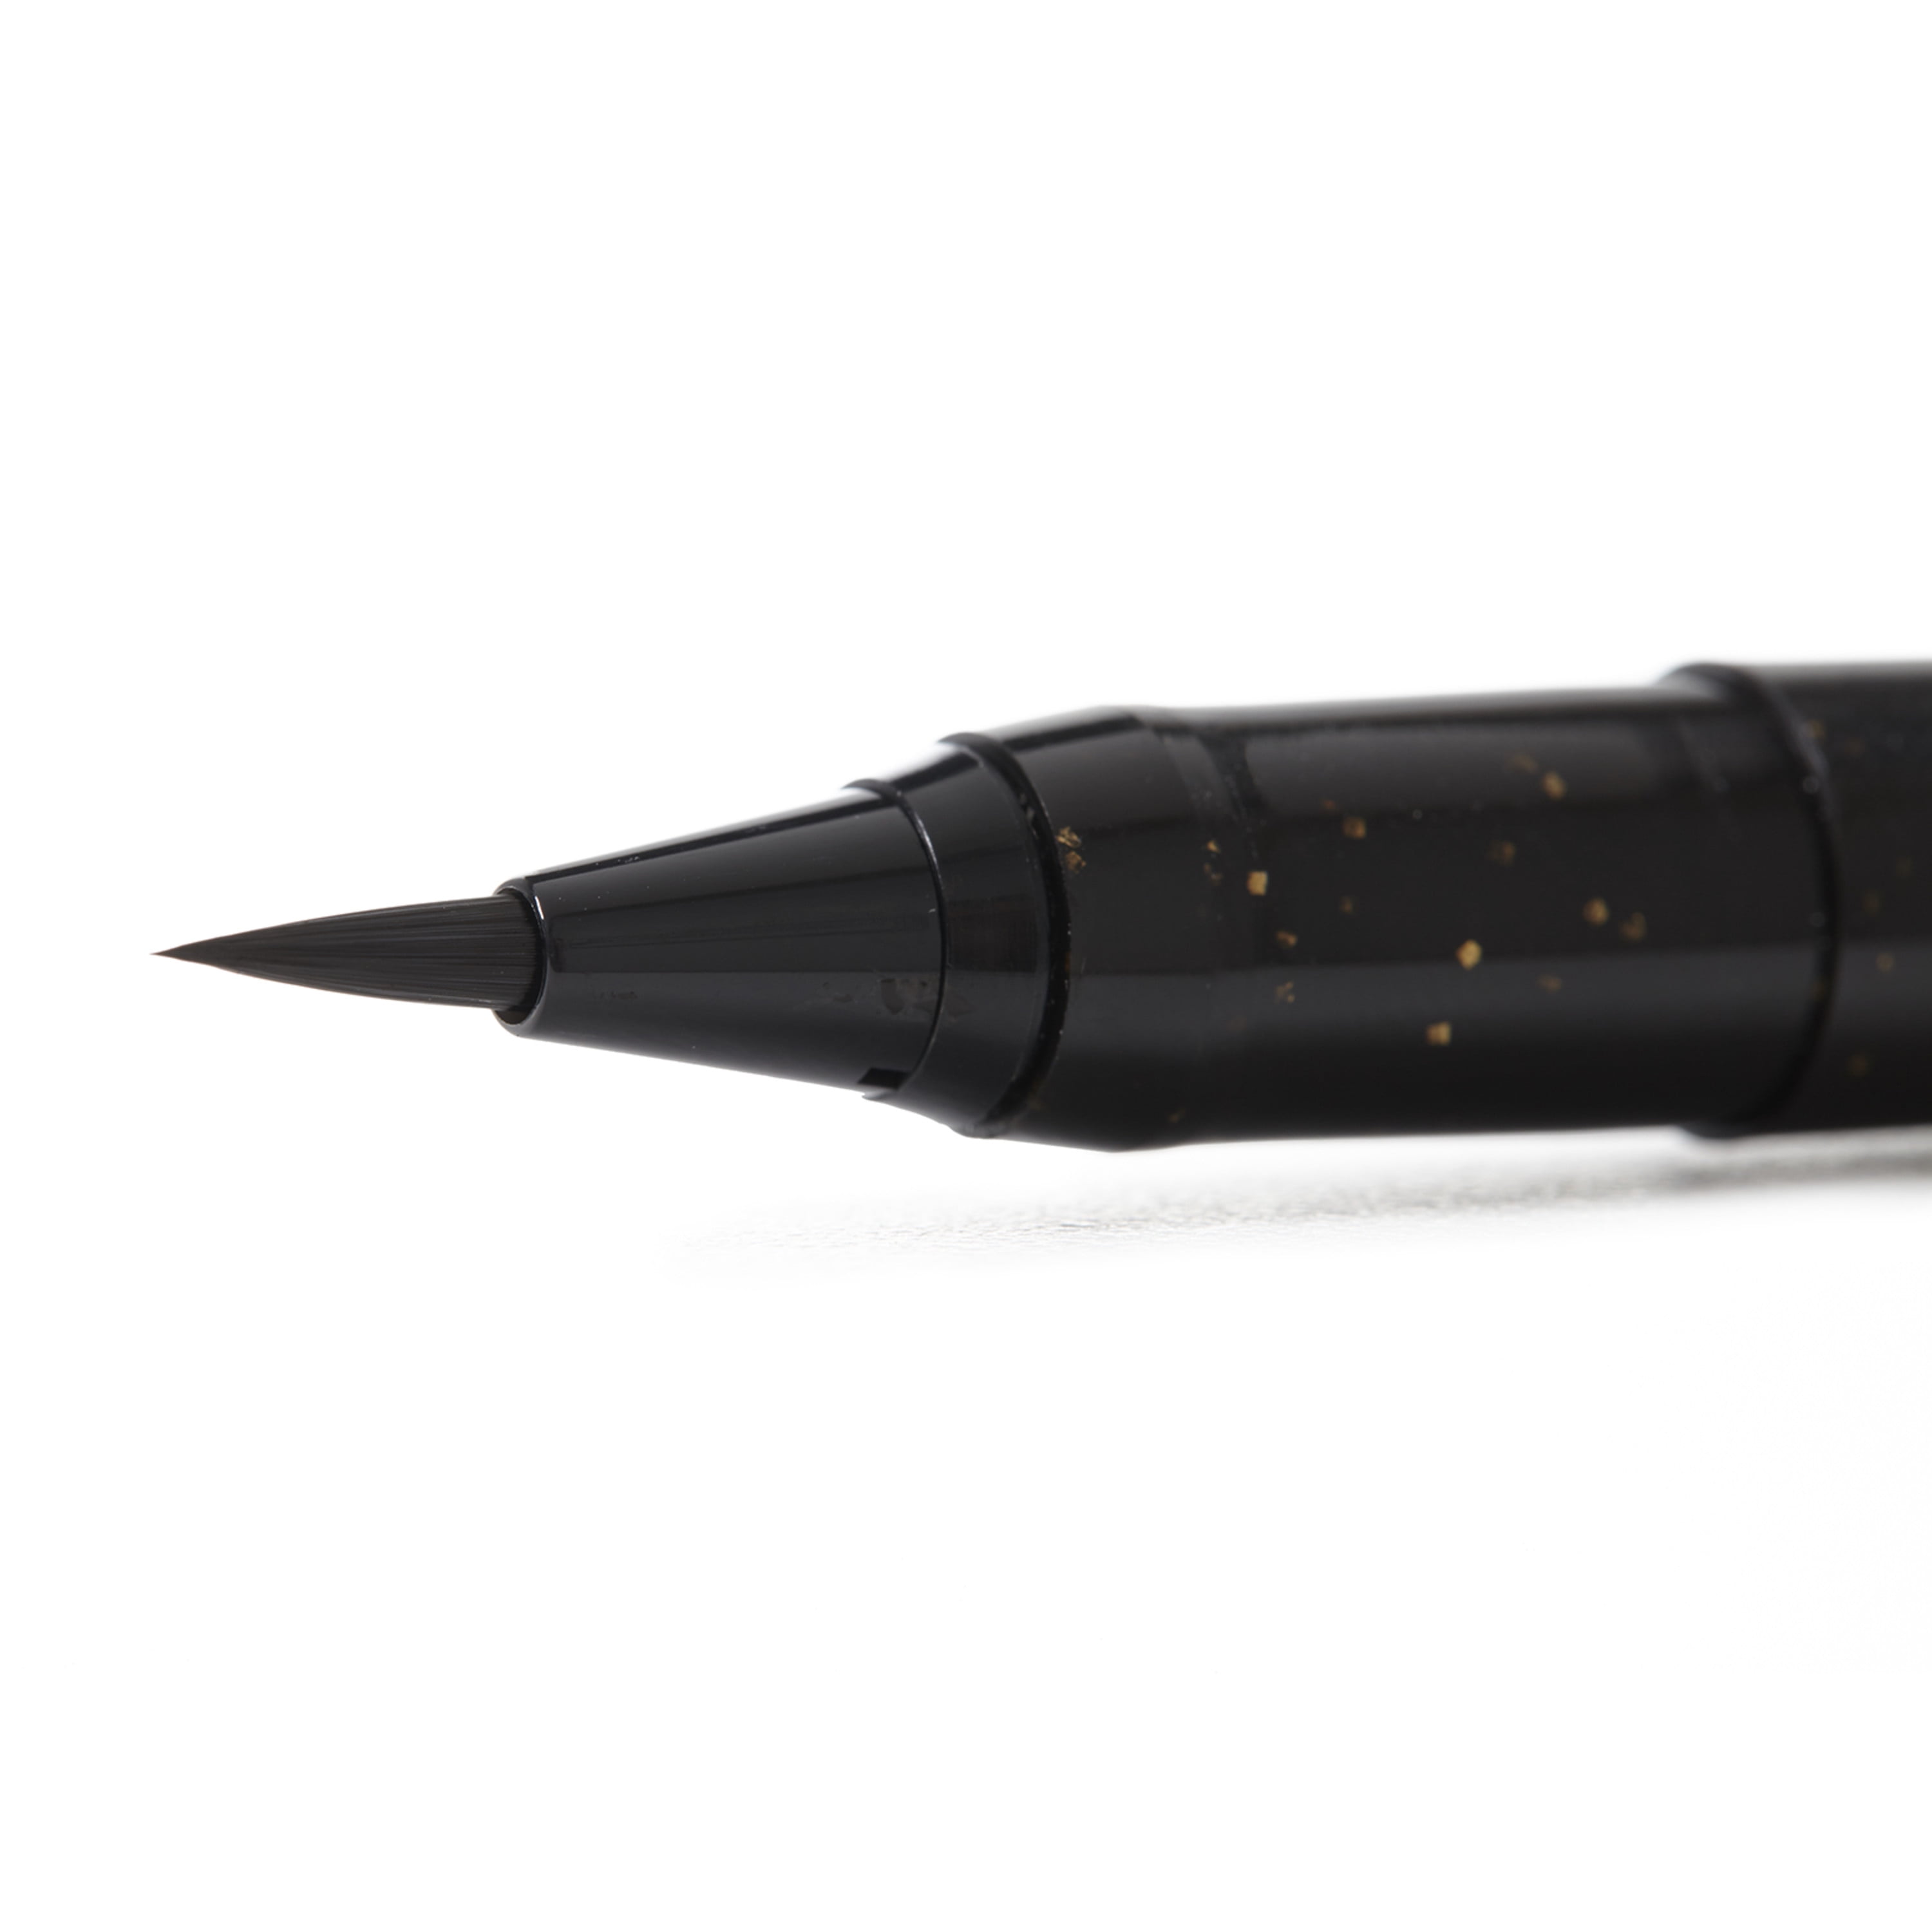 Copic Gasenfude Brush Tip Pen